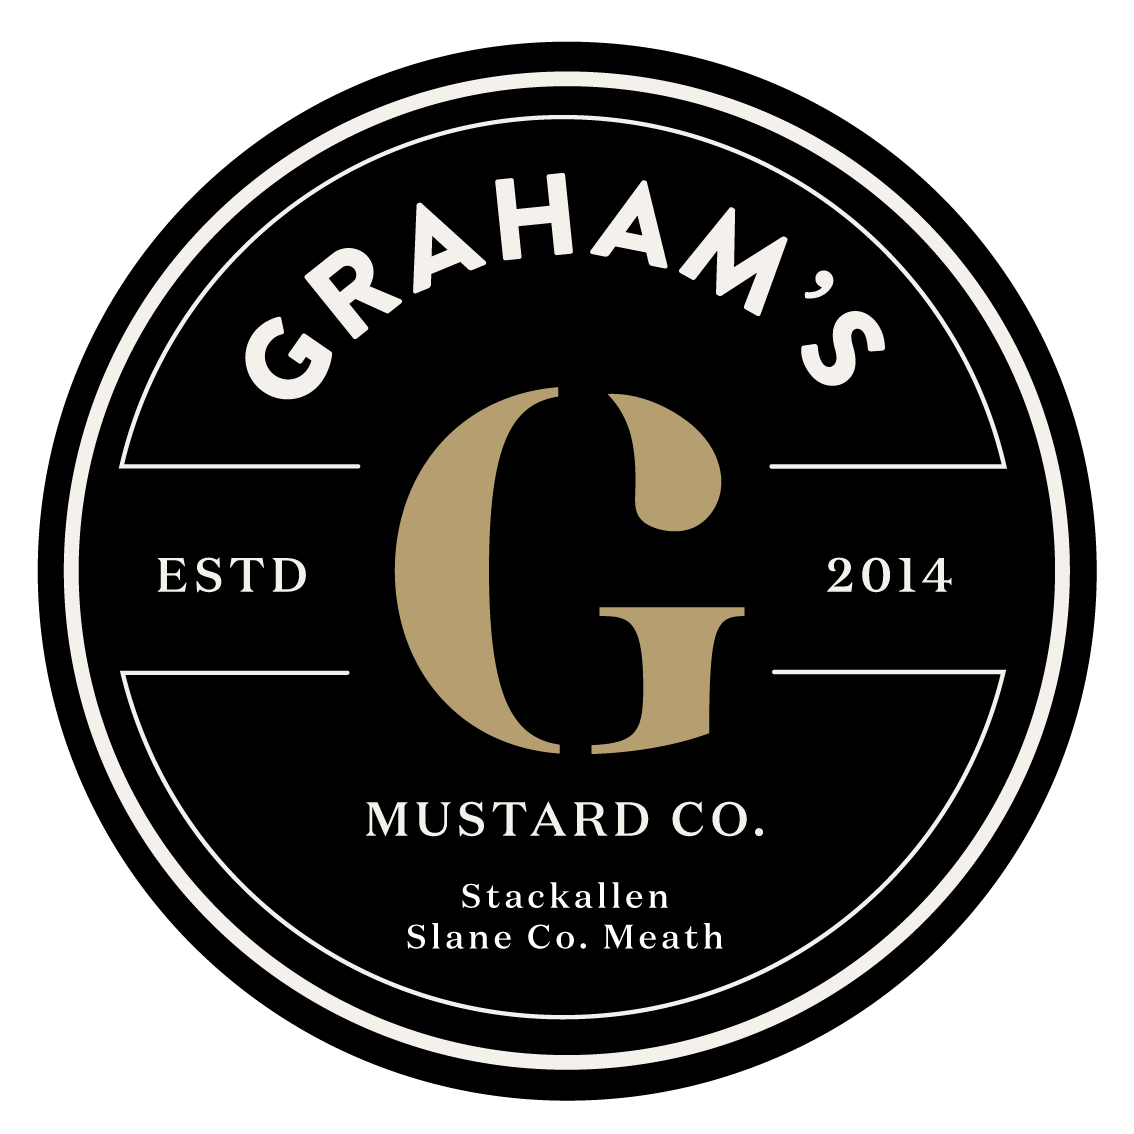 Grahams Mustard